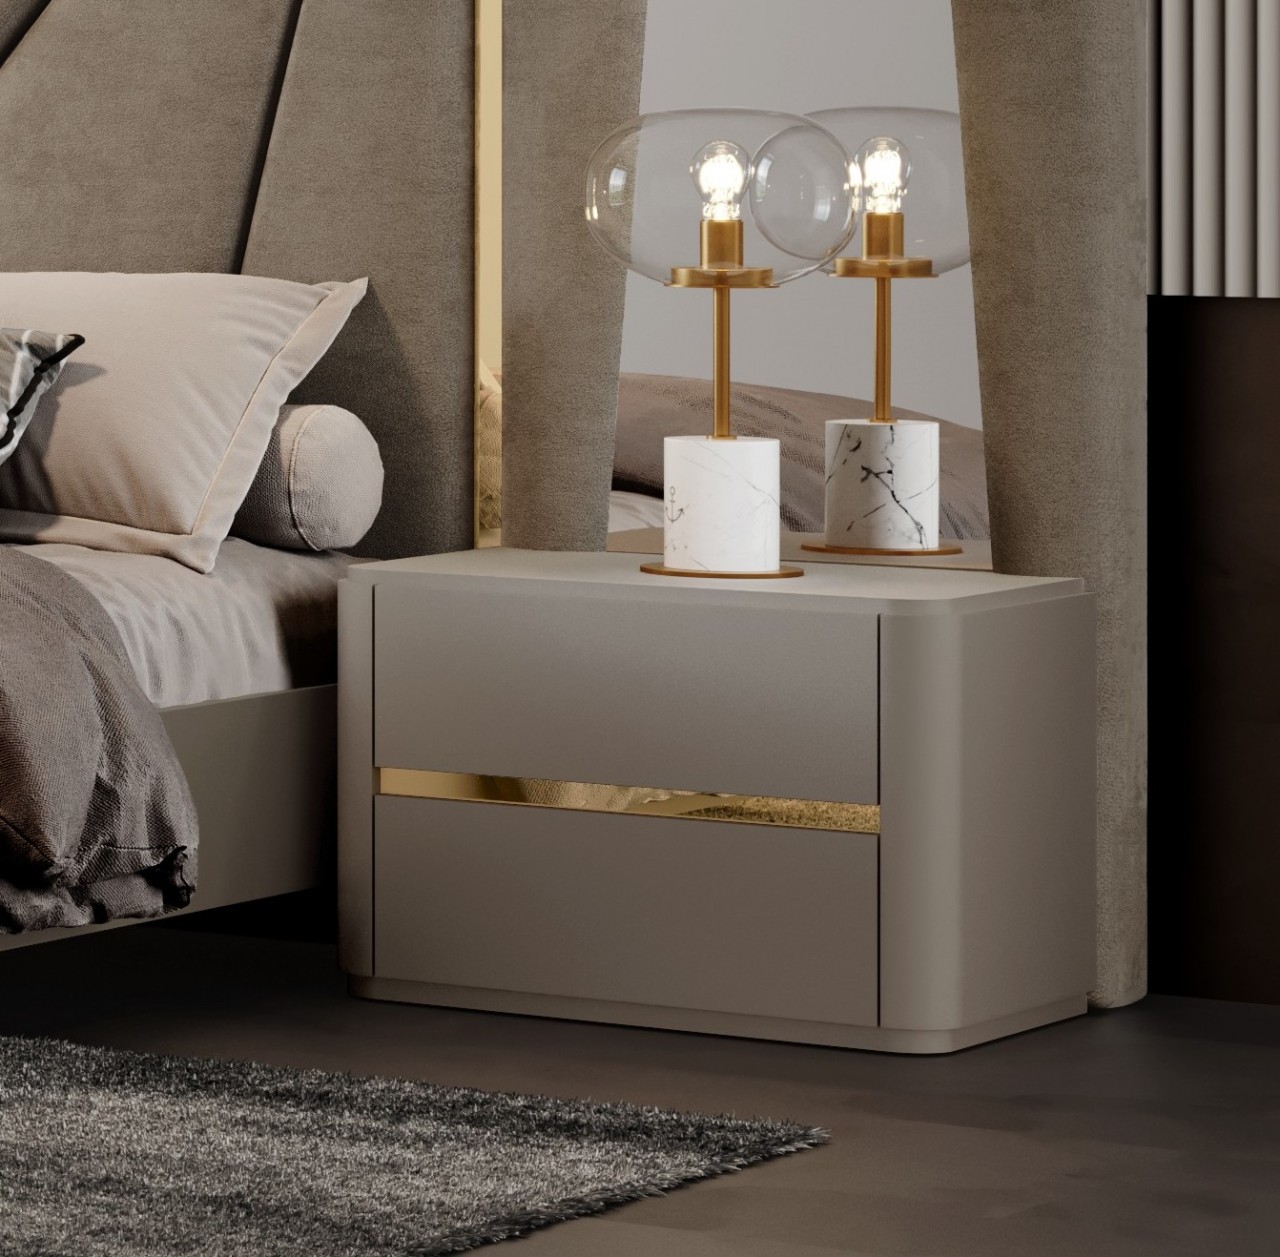 Nunca houve um lugar mais aconchegante para relaxar do que a cama de casal alma. O design moderno e minimalista desta cama deixa o quarto com um ar contemporâneo e elegante.